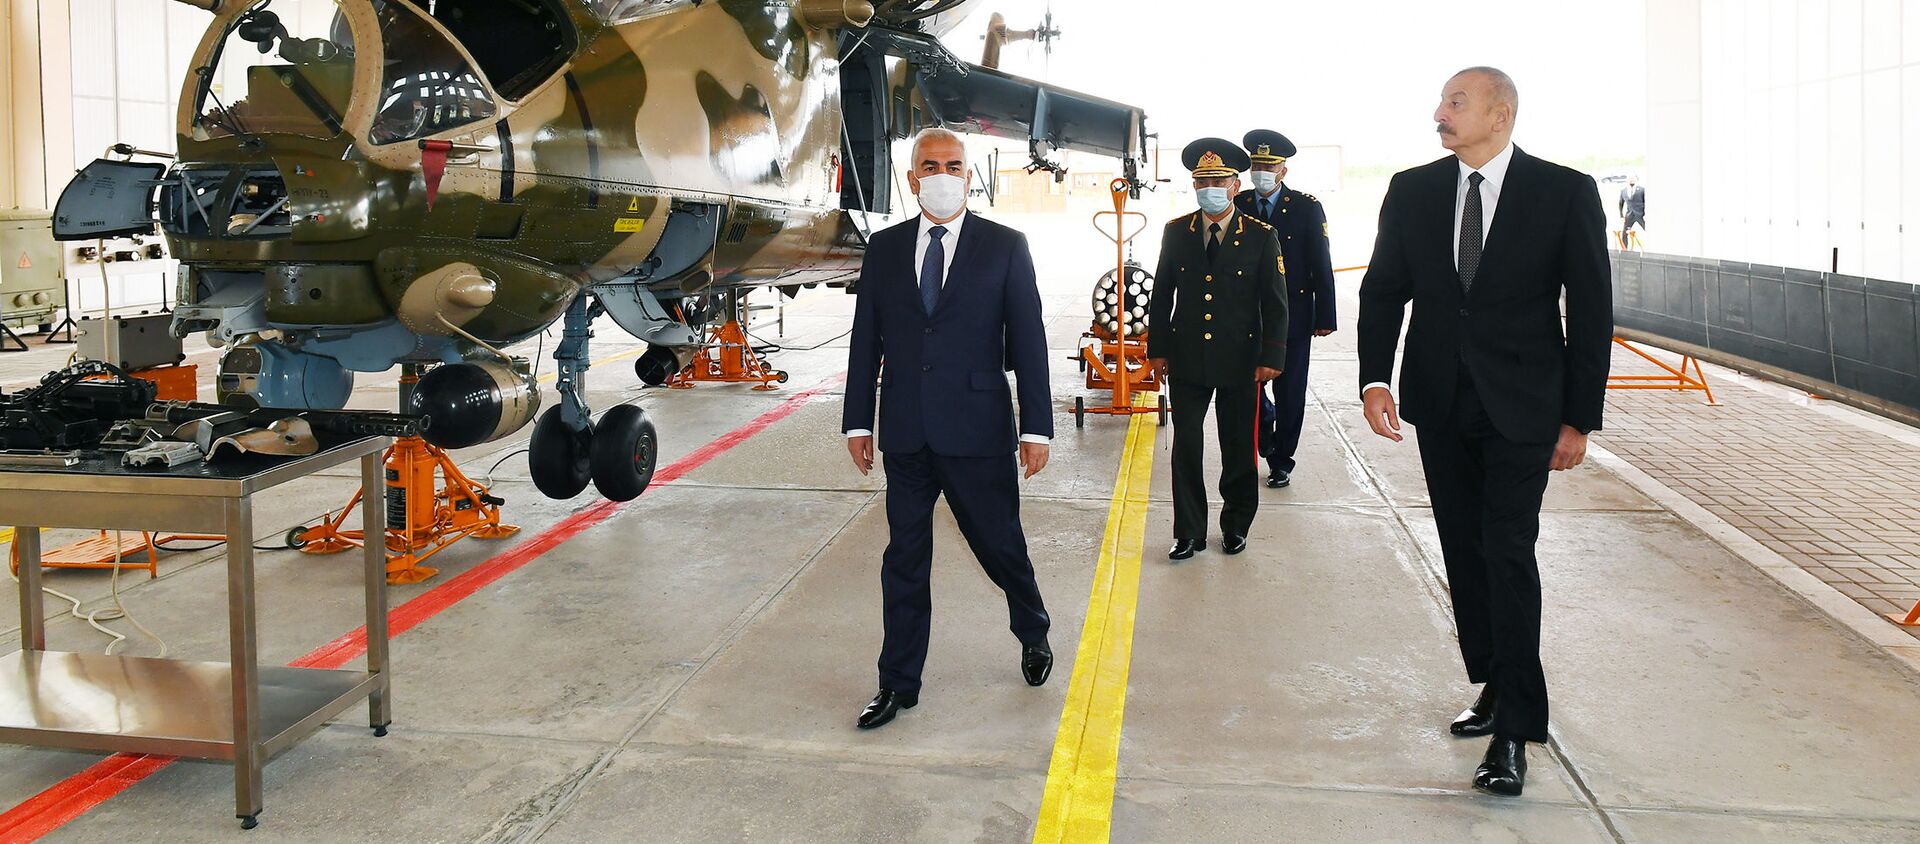 Prezident İlham Əliyev Əlahiddə Ümumqoşun Ordunun hərbi aerodromunun açılışında iştirak edib - Sputnik Азербайджан, 1920, 10.05.2021